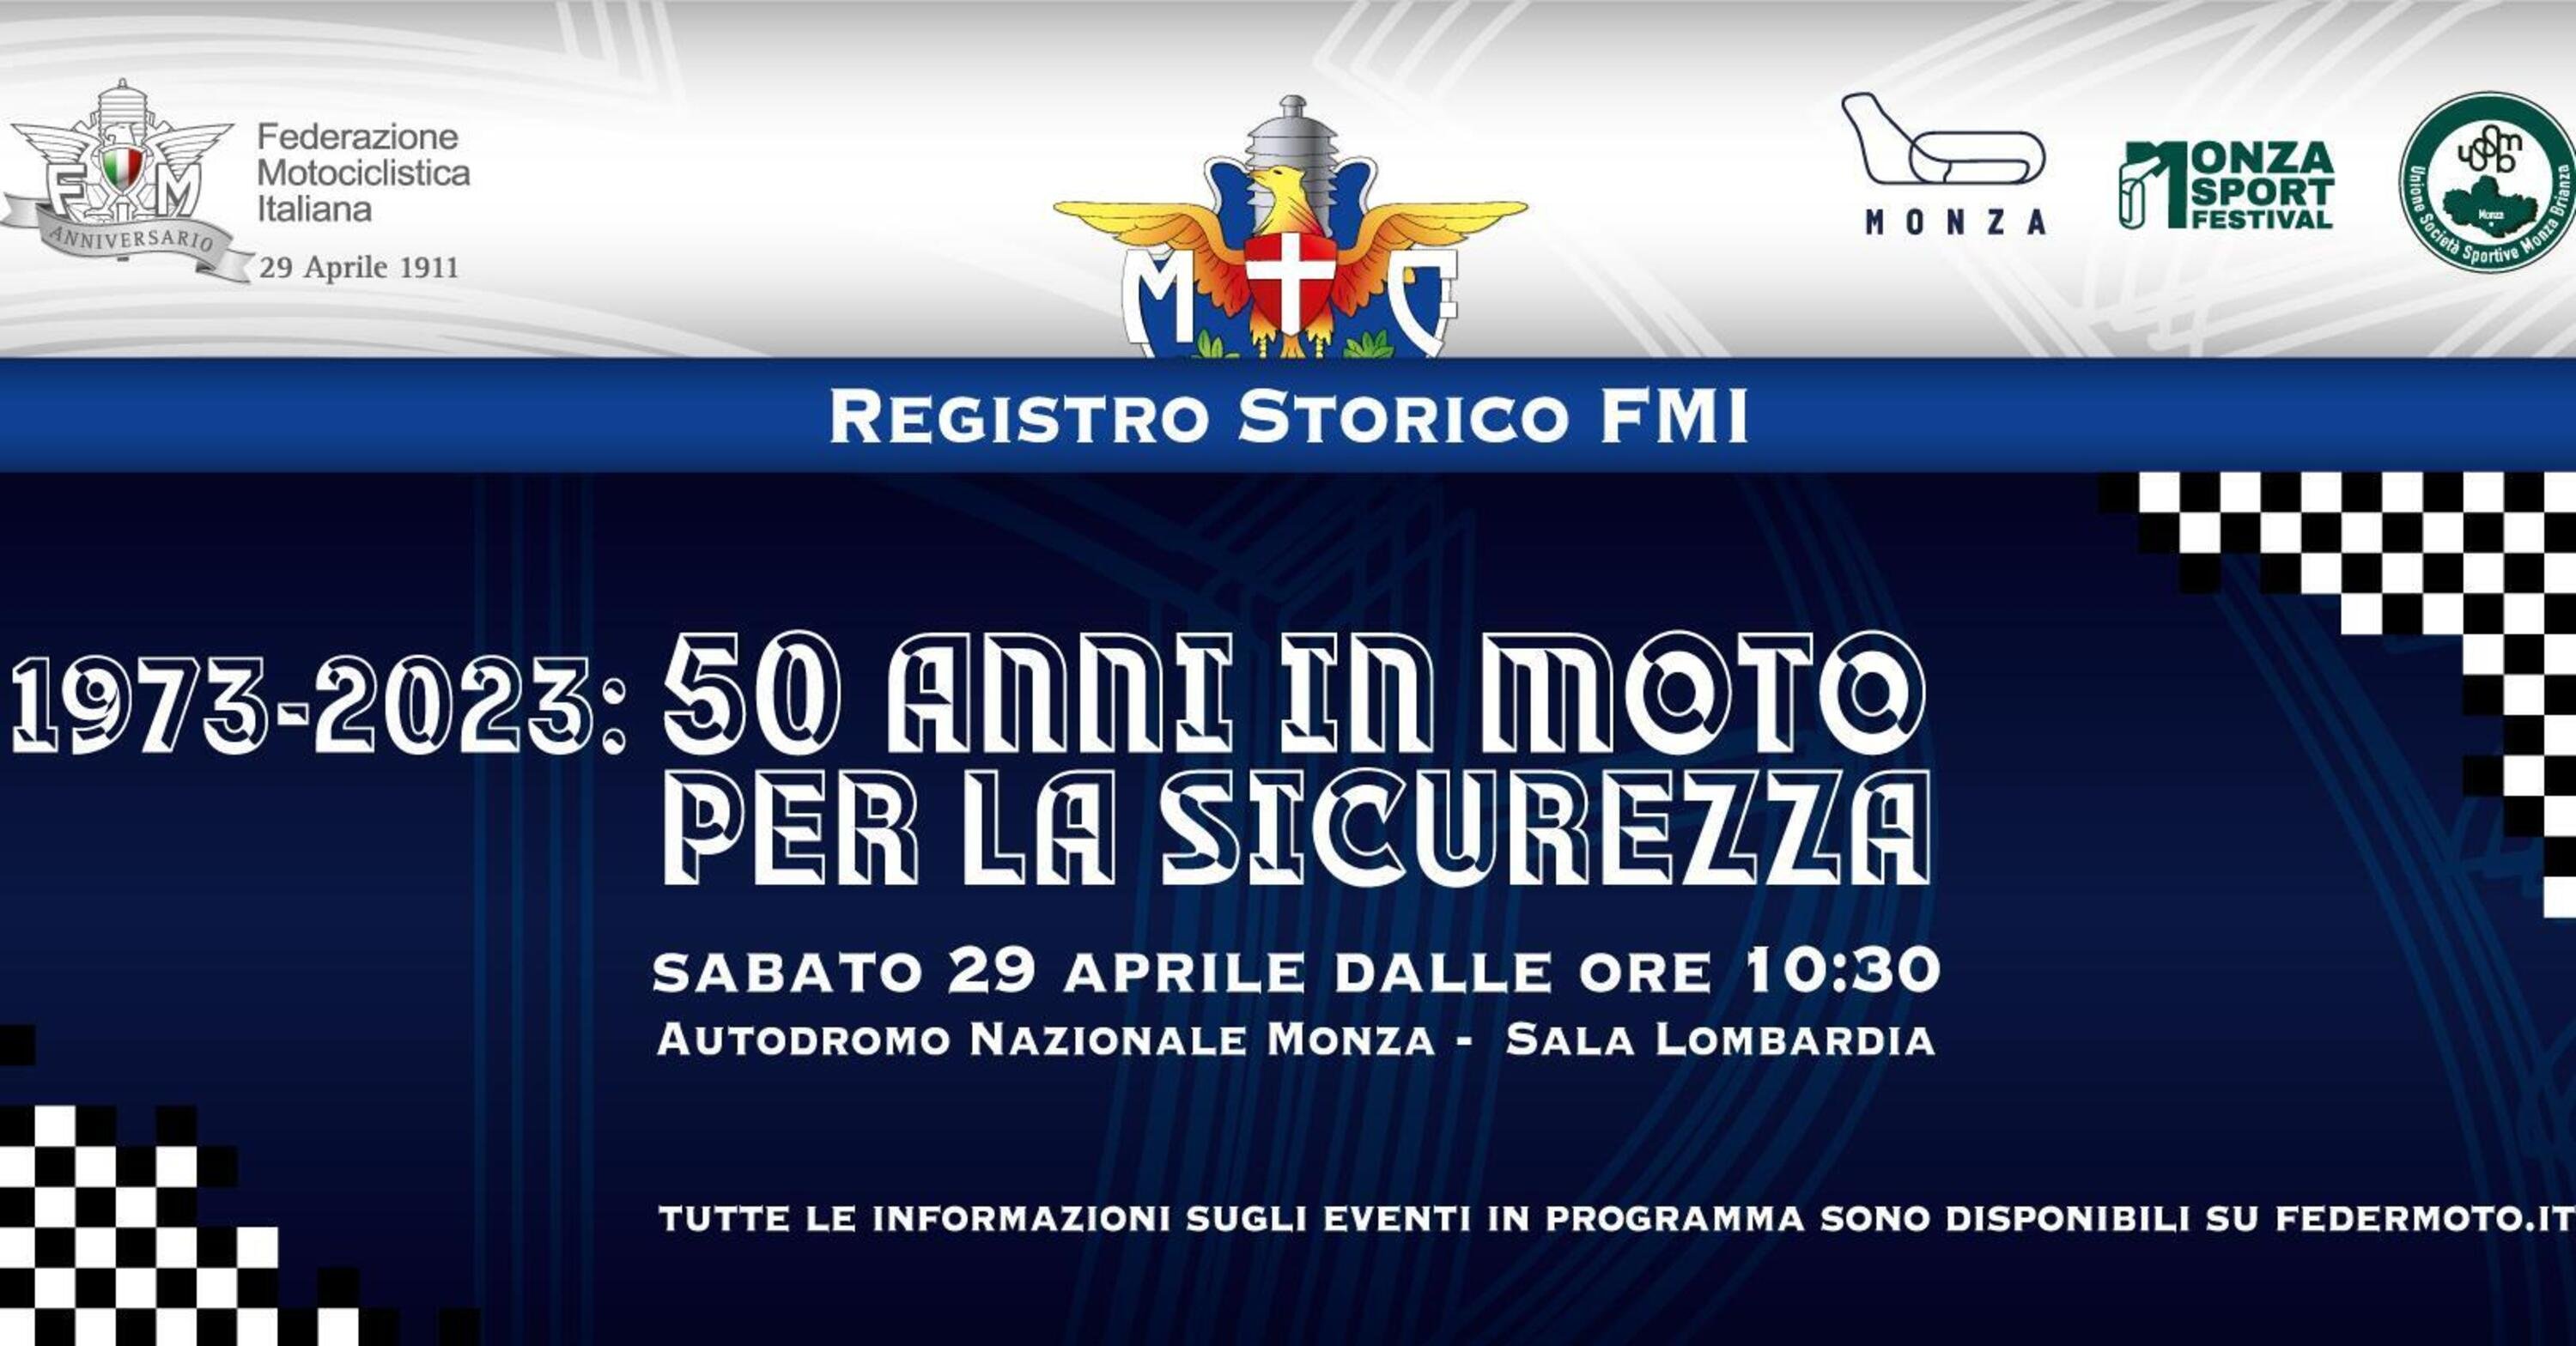 A Monza il grande evento del Registro Storico FMI 1973-2023: 50 Anni in Moto per la Sicurezza